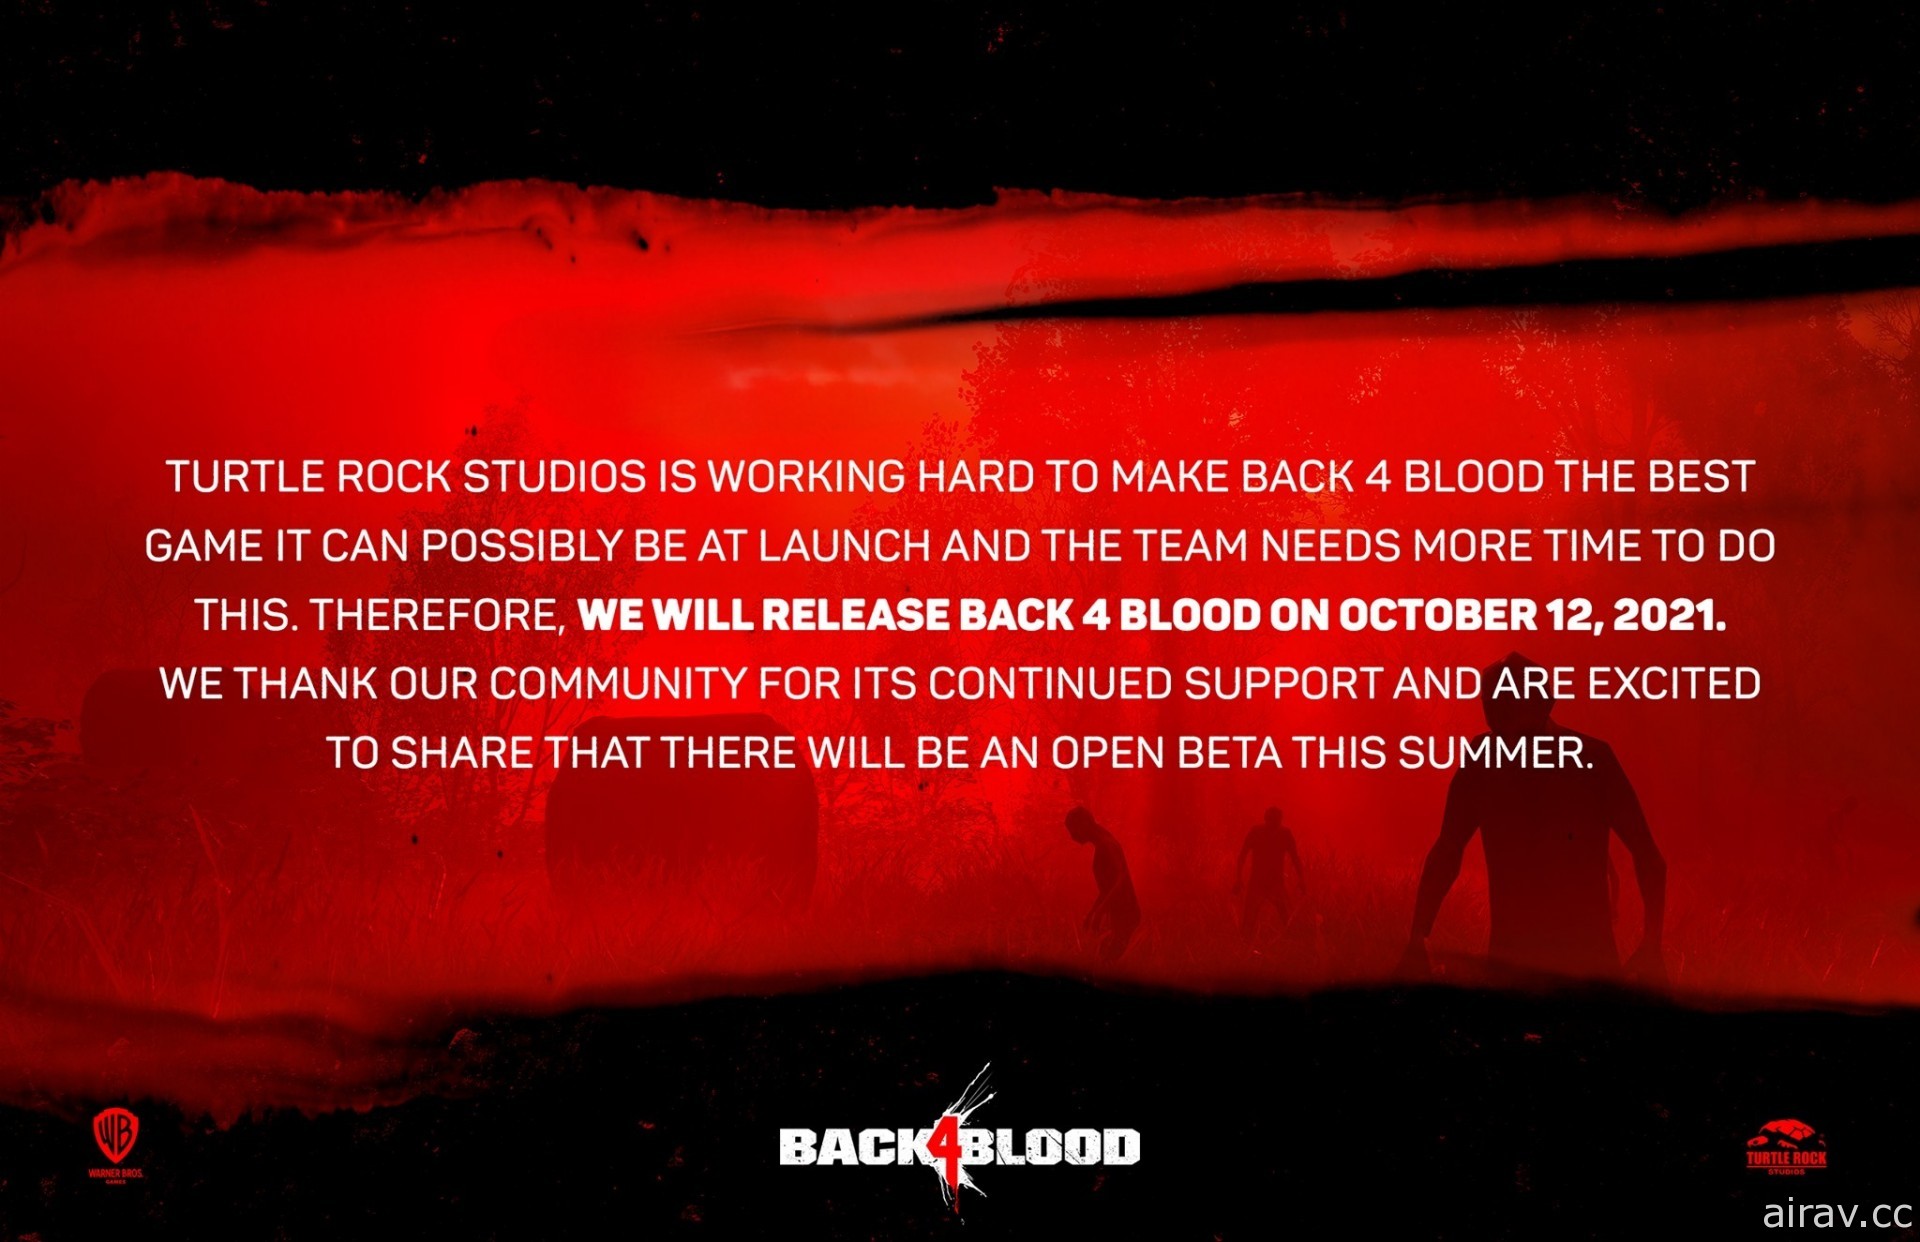 《恶灵势力》团队新作《喋血复仇》在 FGS 公开新影片 宣布延期至 10 月上市